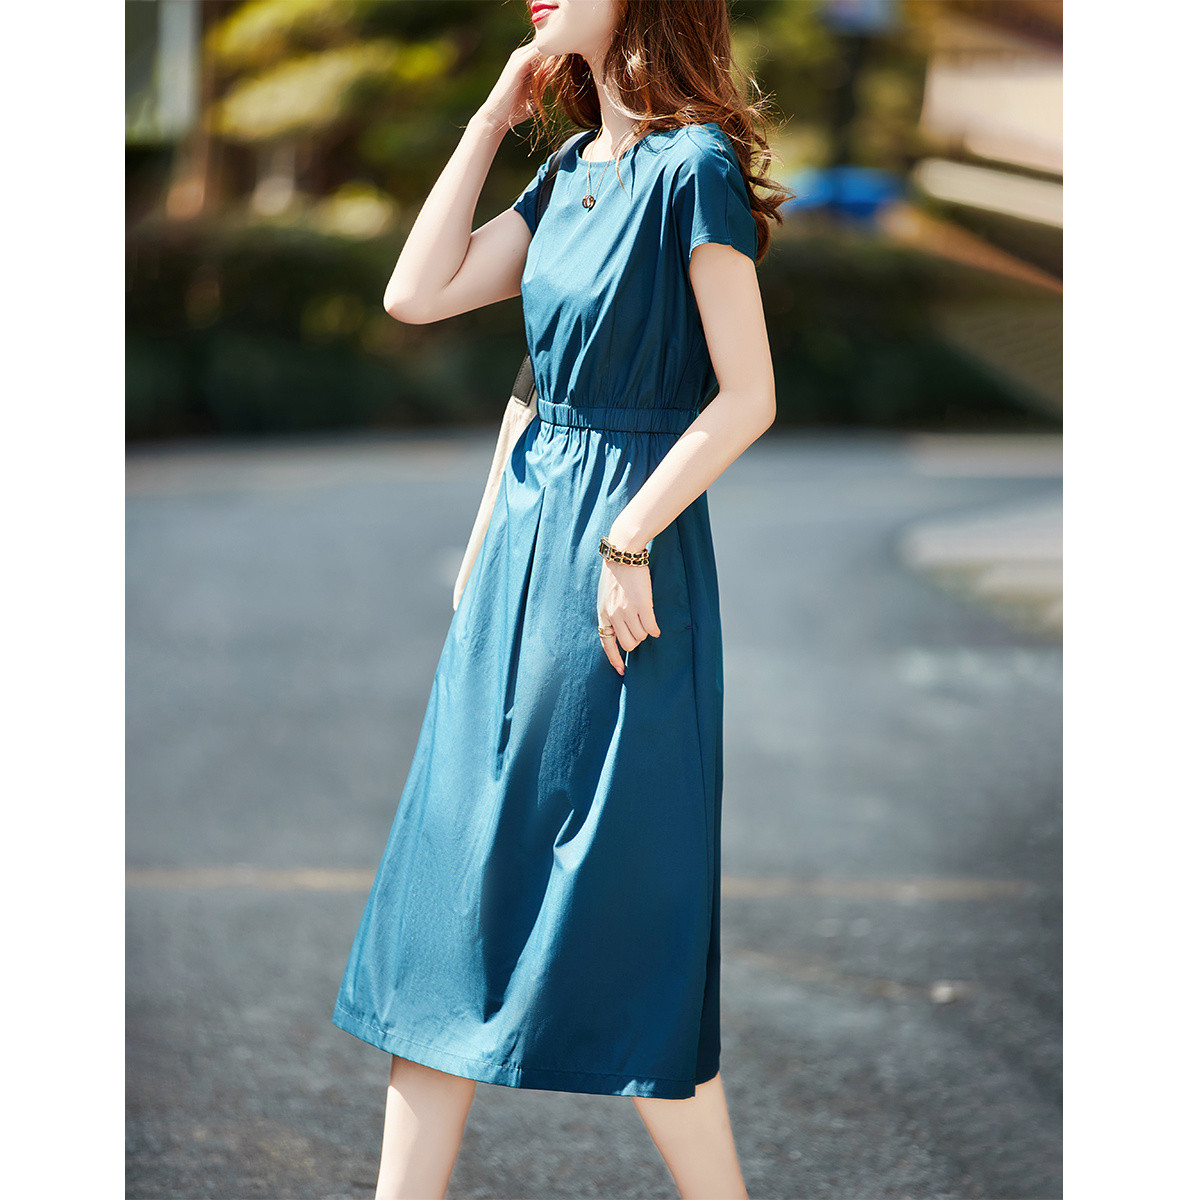 Chouzhe long dress temperament dress for women